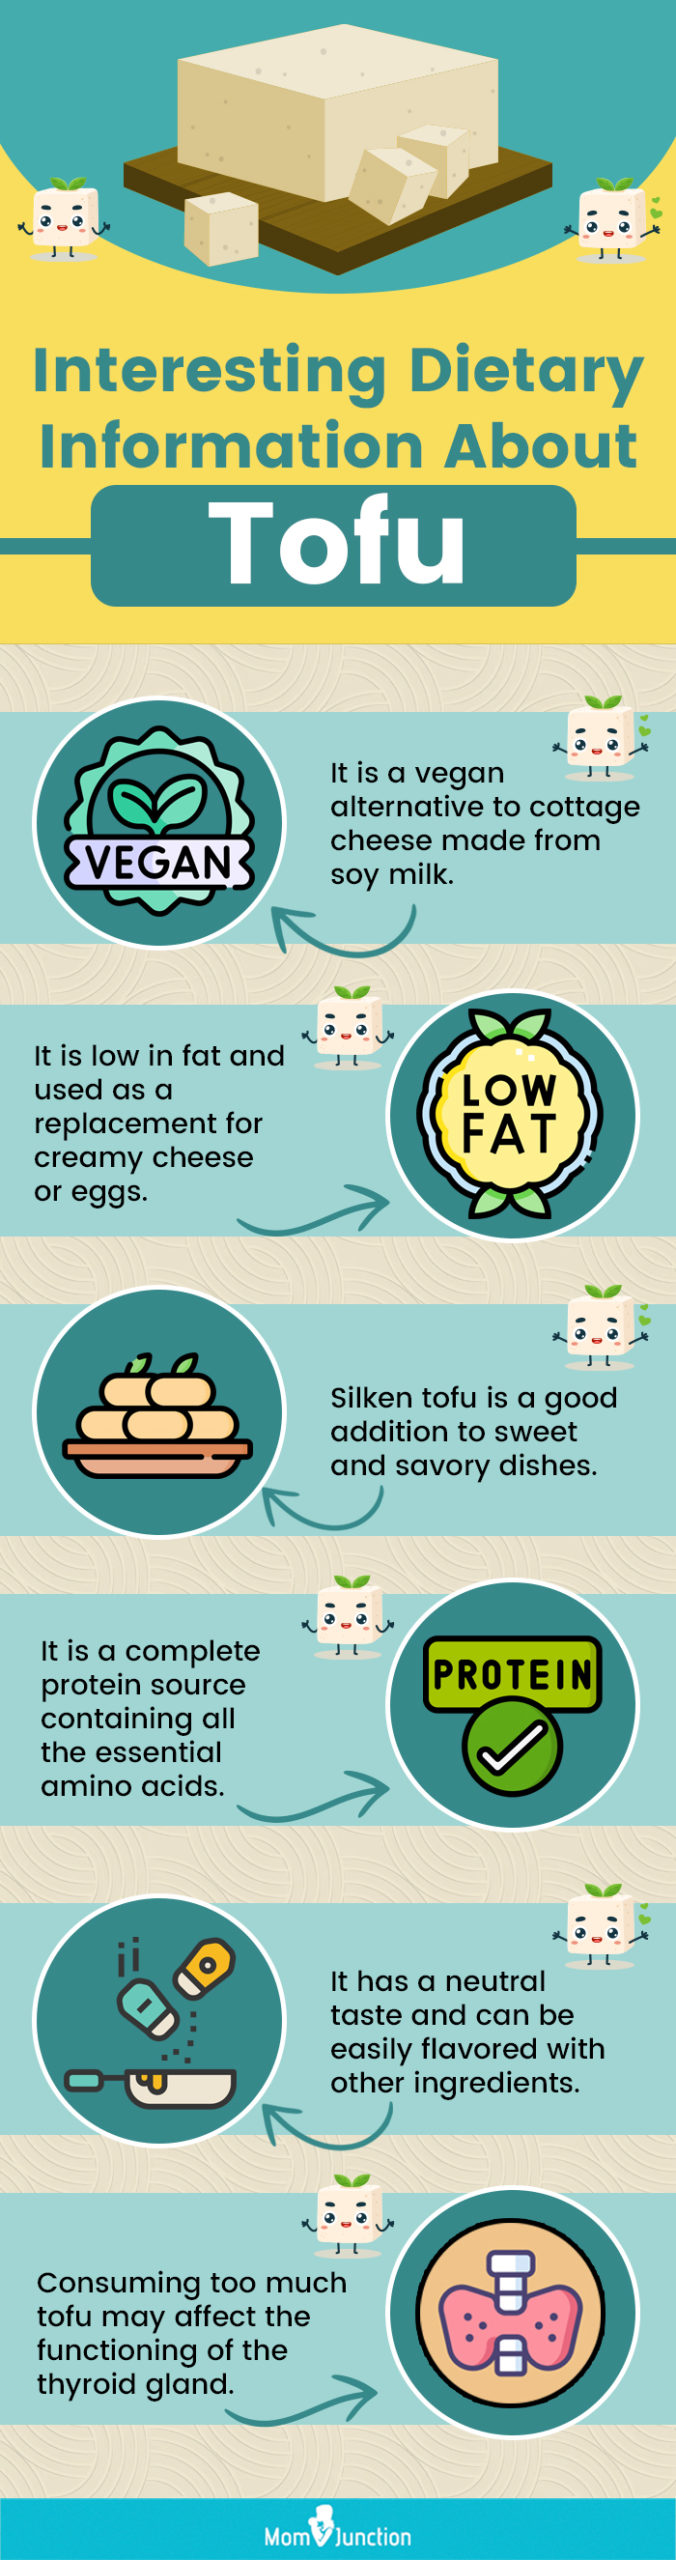 豆腐有趣的饮食资讯(资讯图)